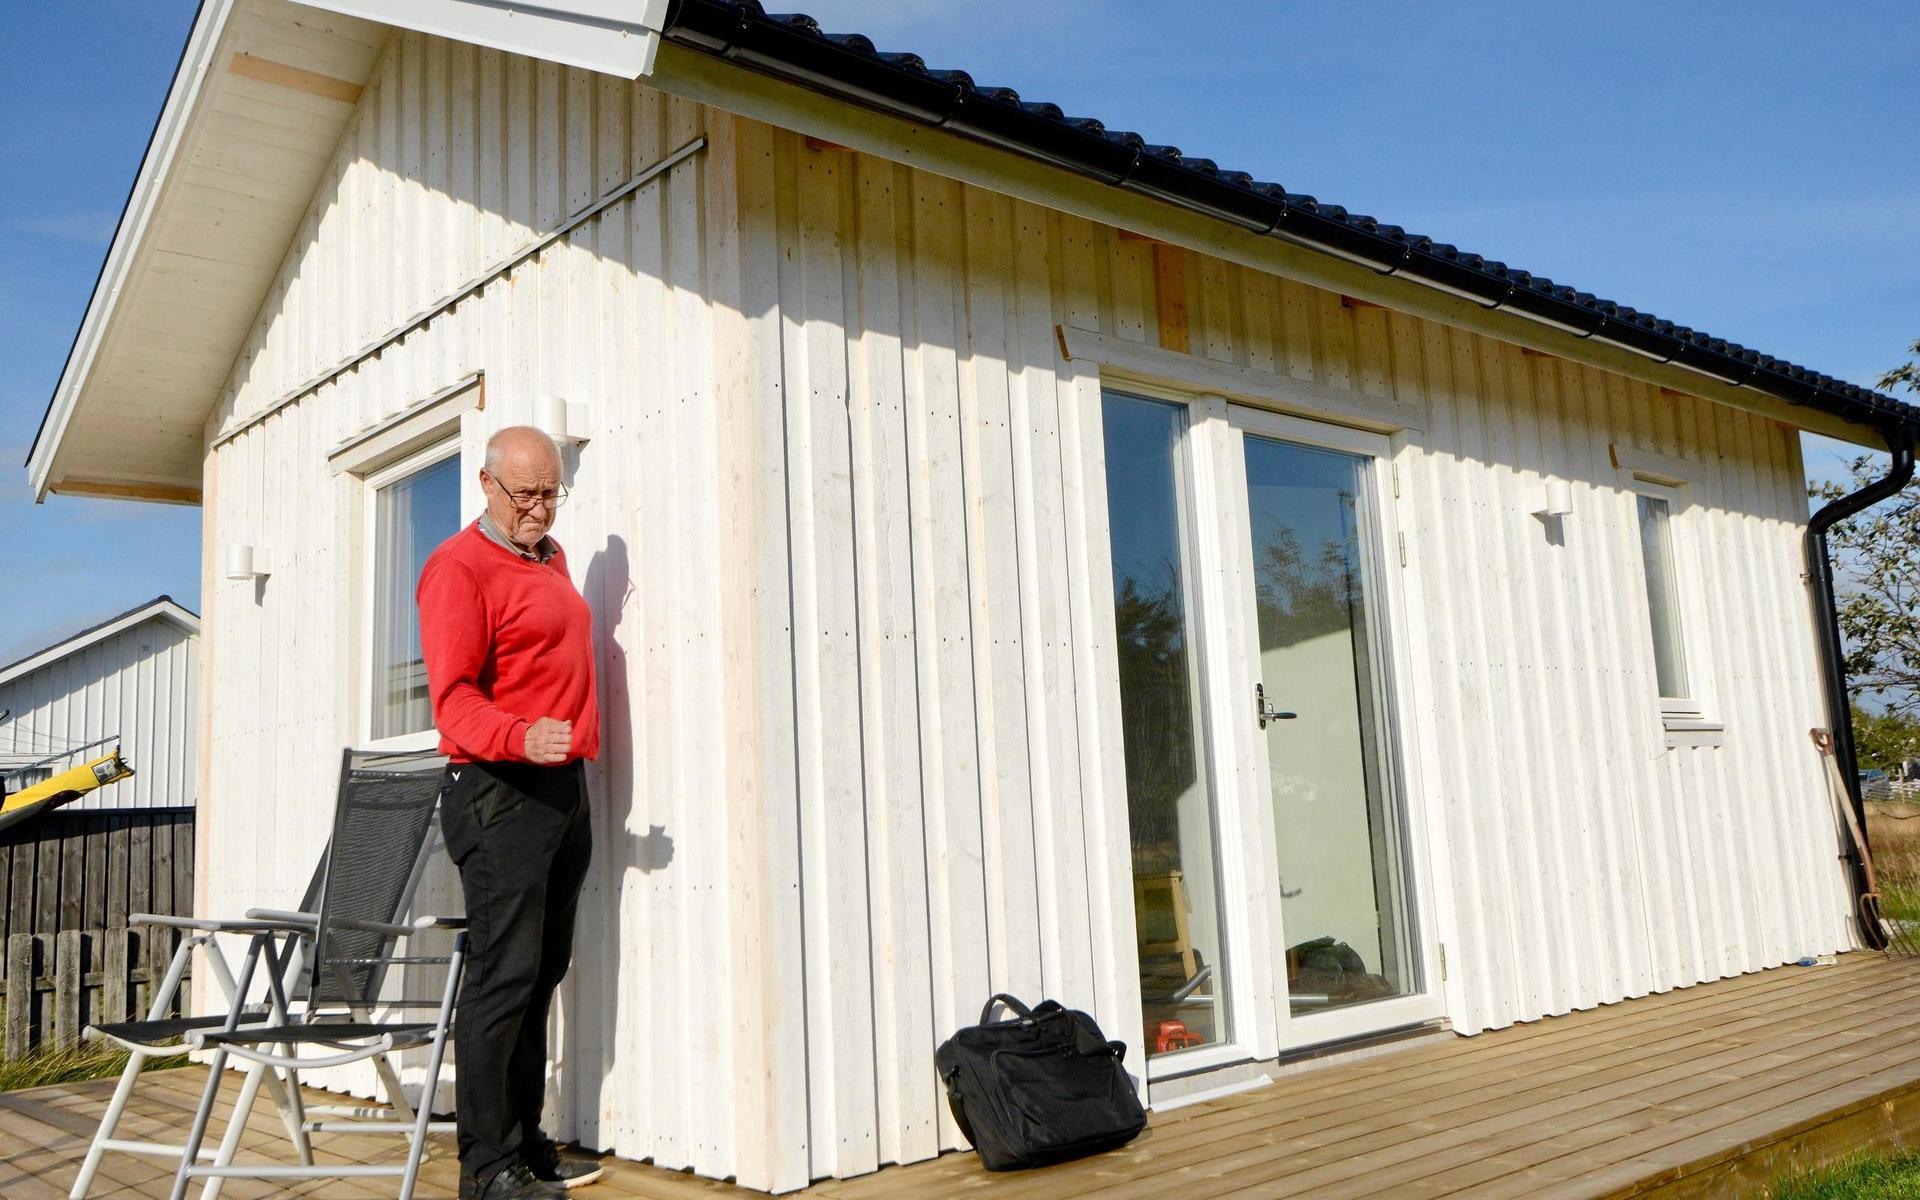 Huset har kostat omkring 600 000 kronor att bygga. Att flytta det skulle kosta 200 000 kronor till, berättar Kjell Svensson.